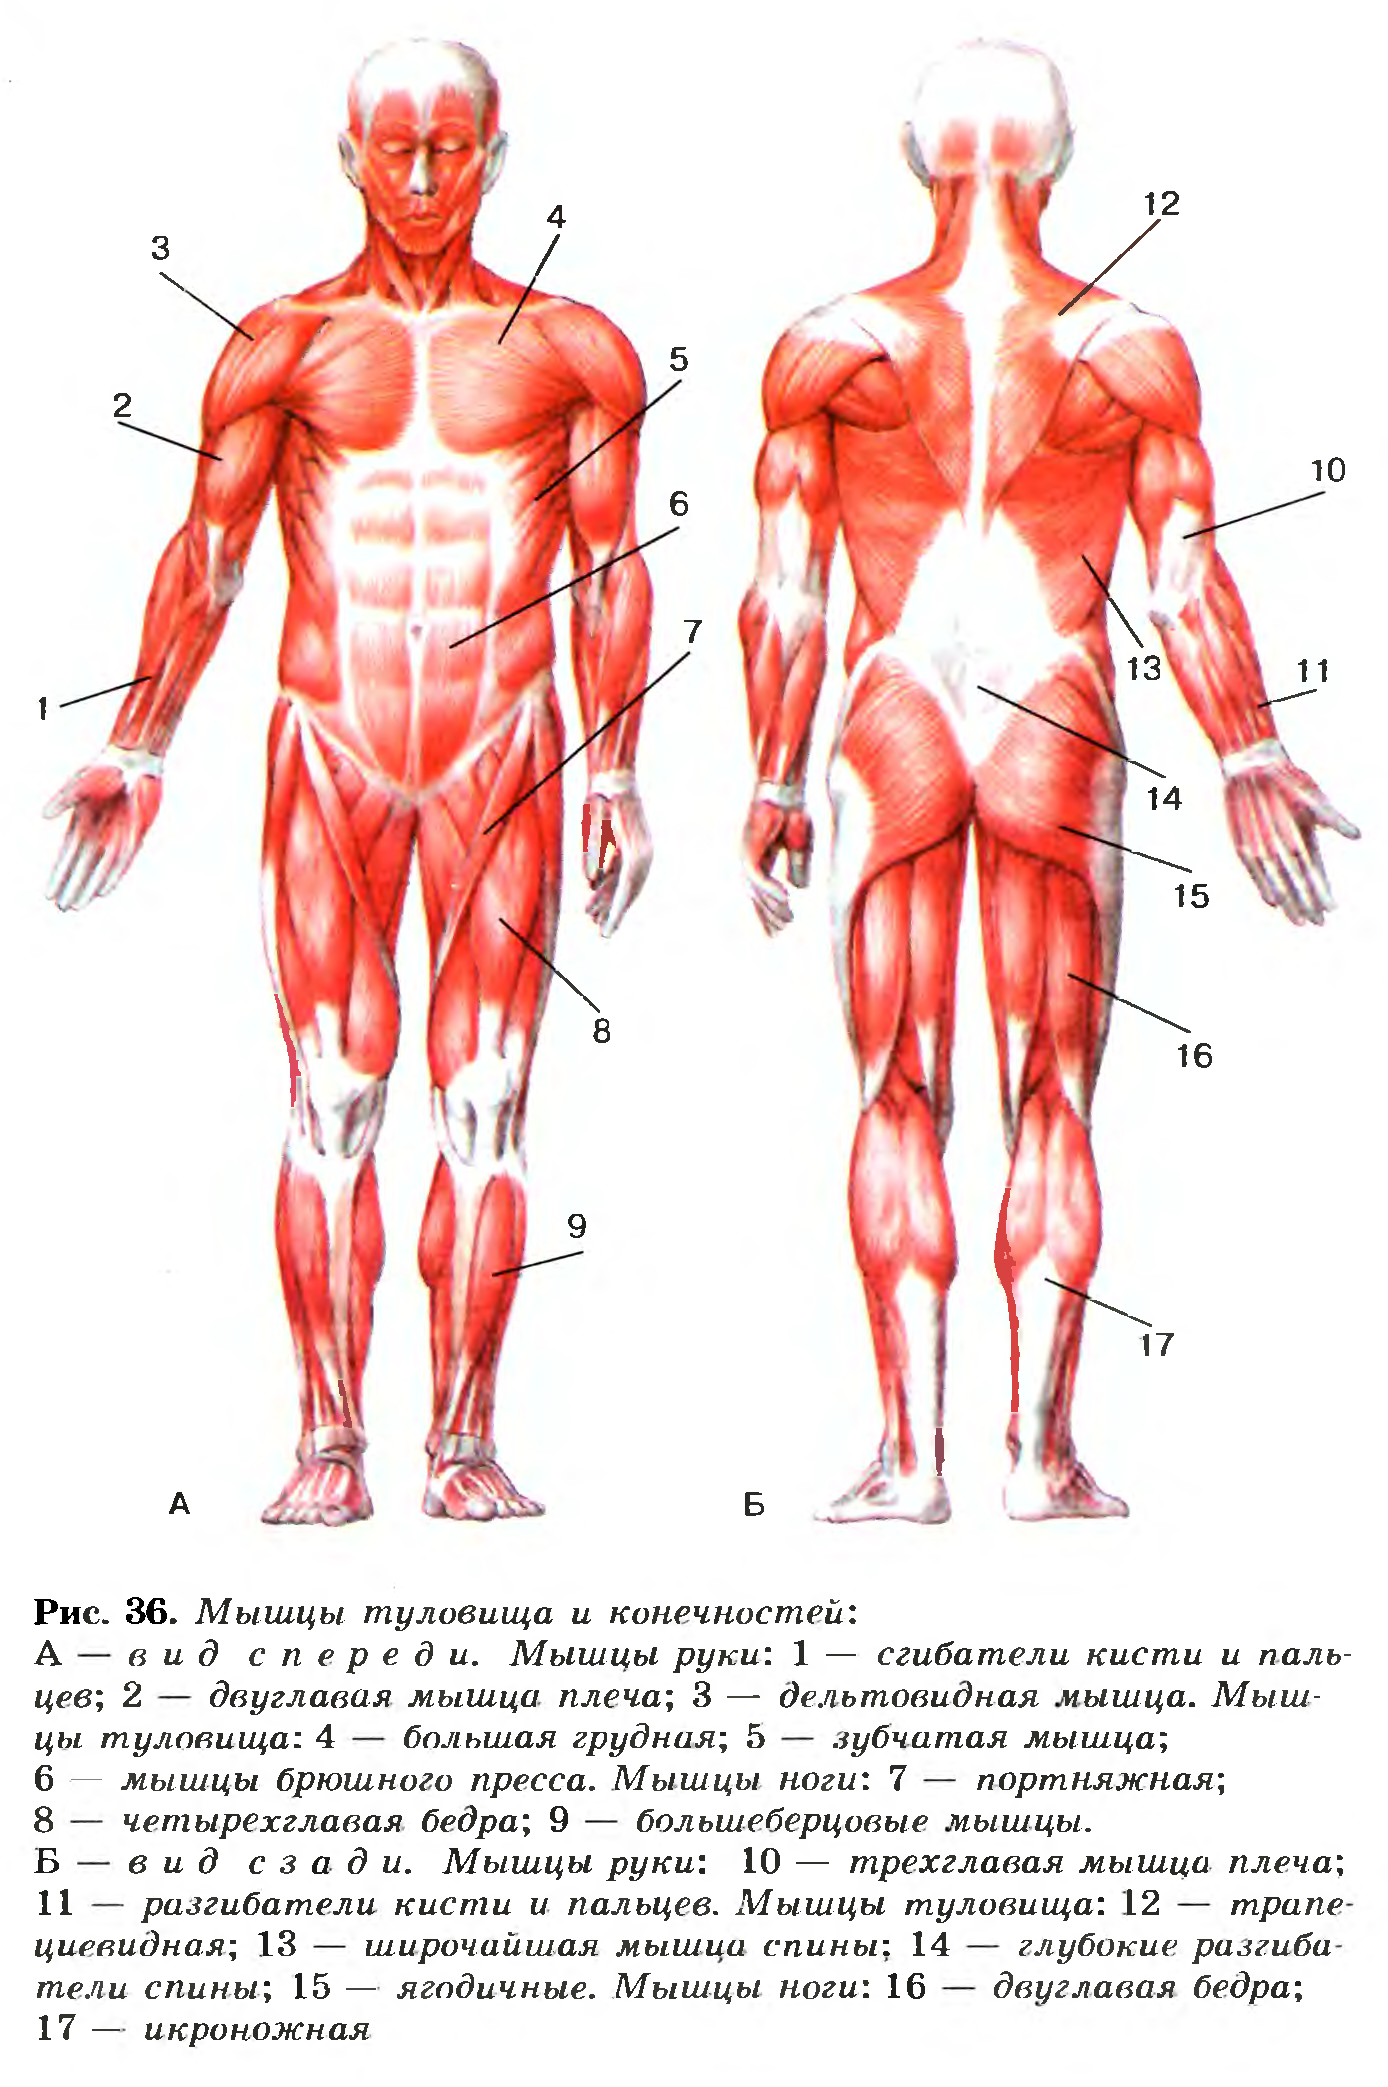 Передняя часть человека. Строение мышц туловища и конечностей человека.